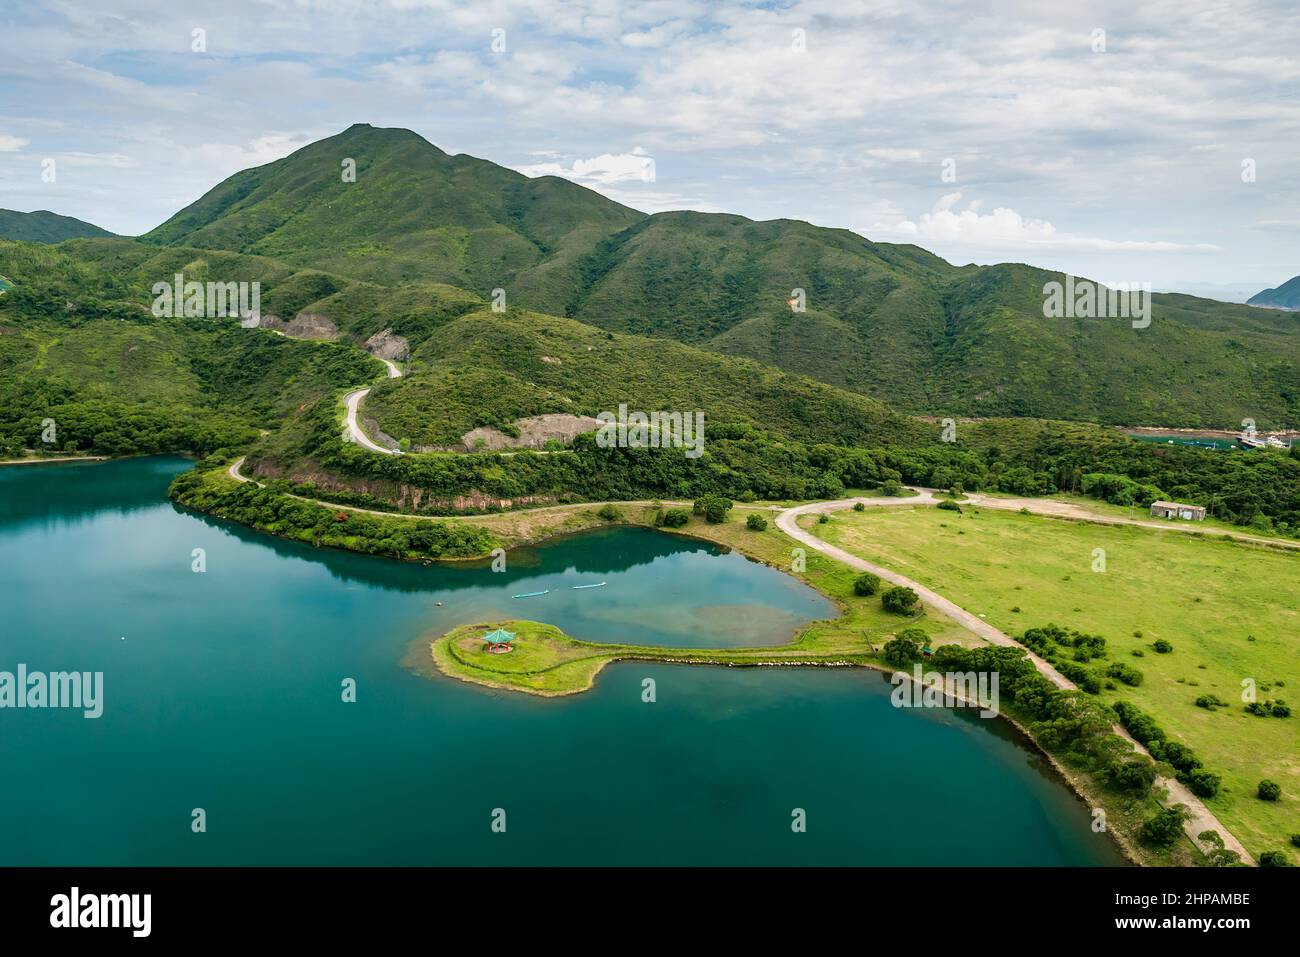 Hélicoptère montrant un lac artificiel entre le barrage de la caisse et le principal barrage ouest du réservoir de High Island, Sai Kung East Country Park, Hong Kong Banque D'Images